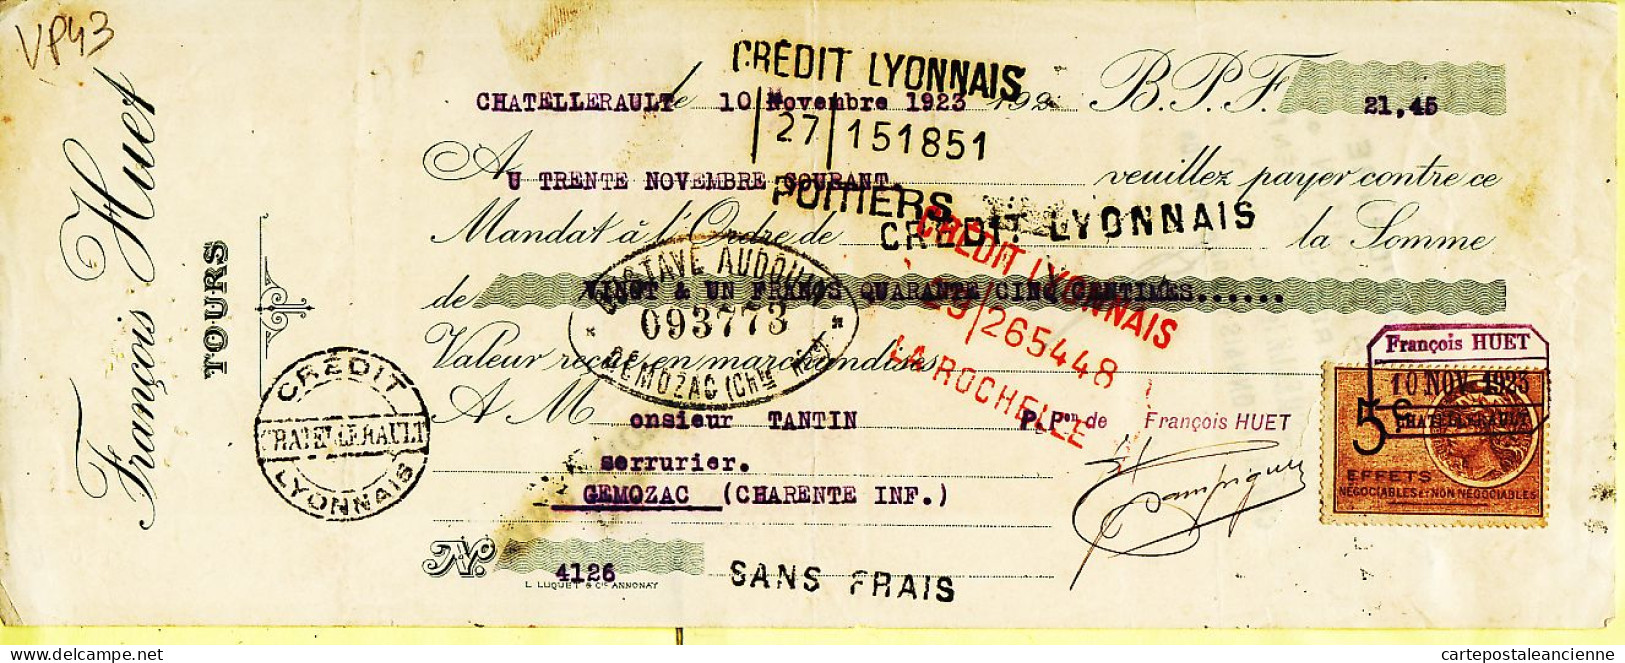 31263 / François HUET Tours Lettre De Change 10.11.1923 à TANTIN Serrurier Genozac Timbre Fiscal 5 Frcs - Letras De Cambio